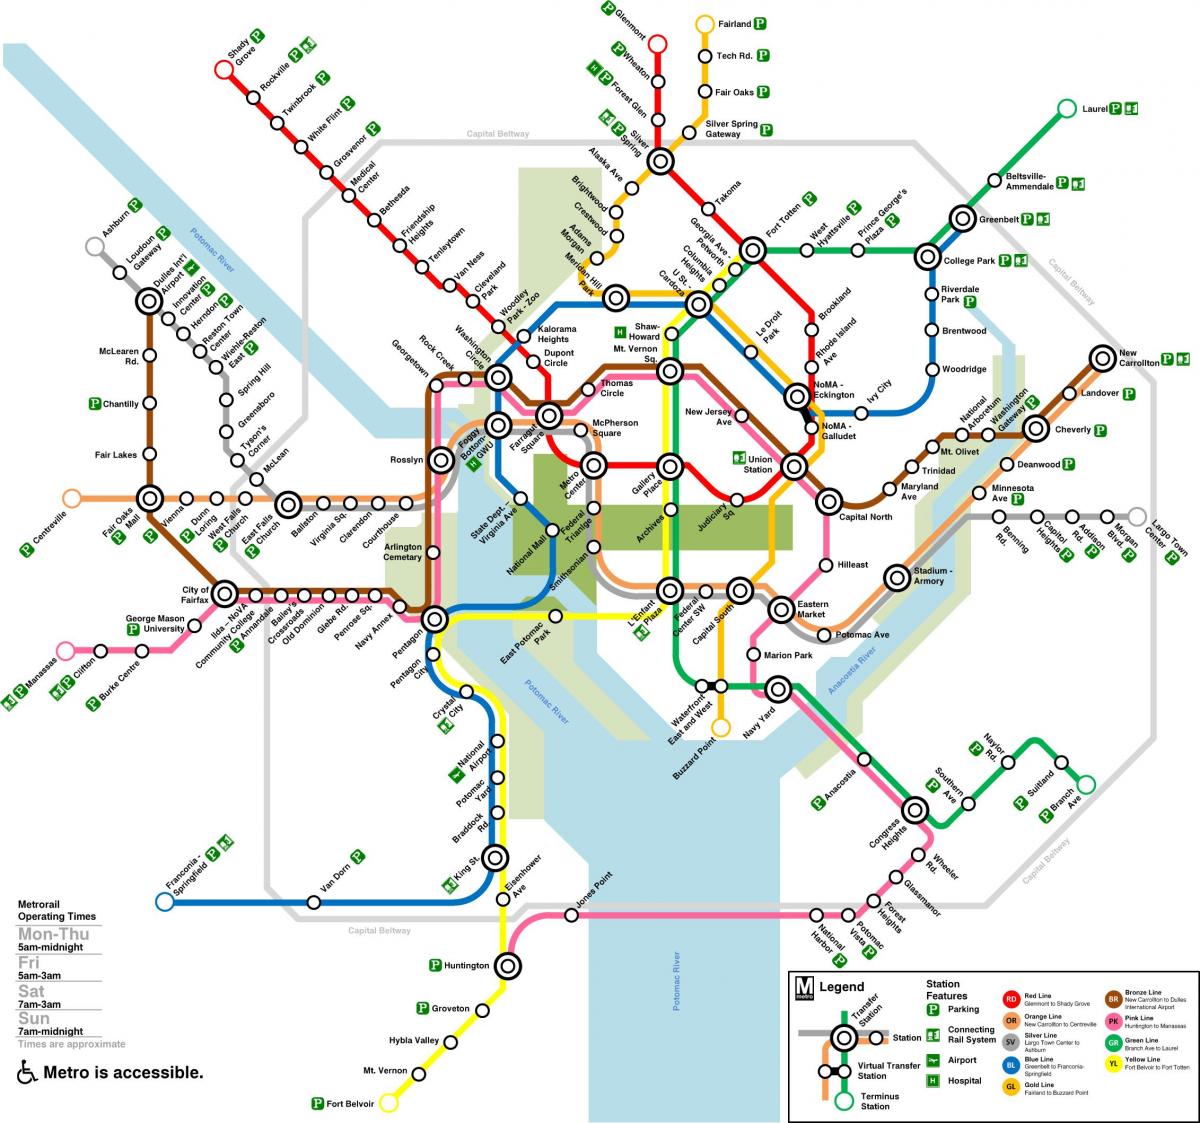 Washington DC subway station map